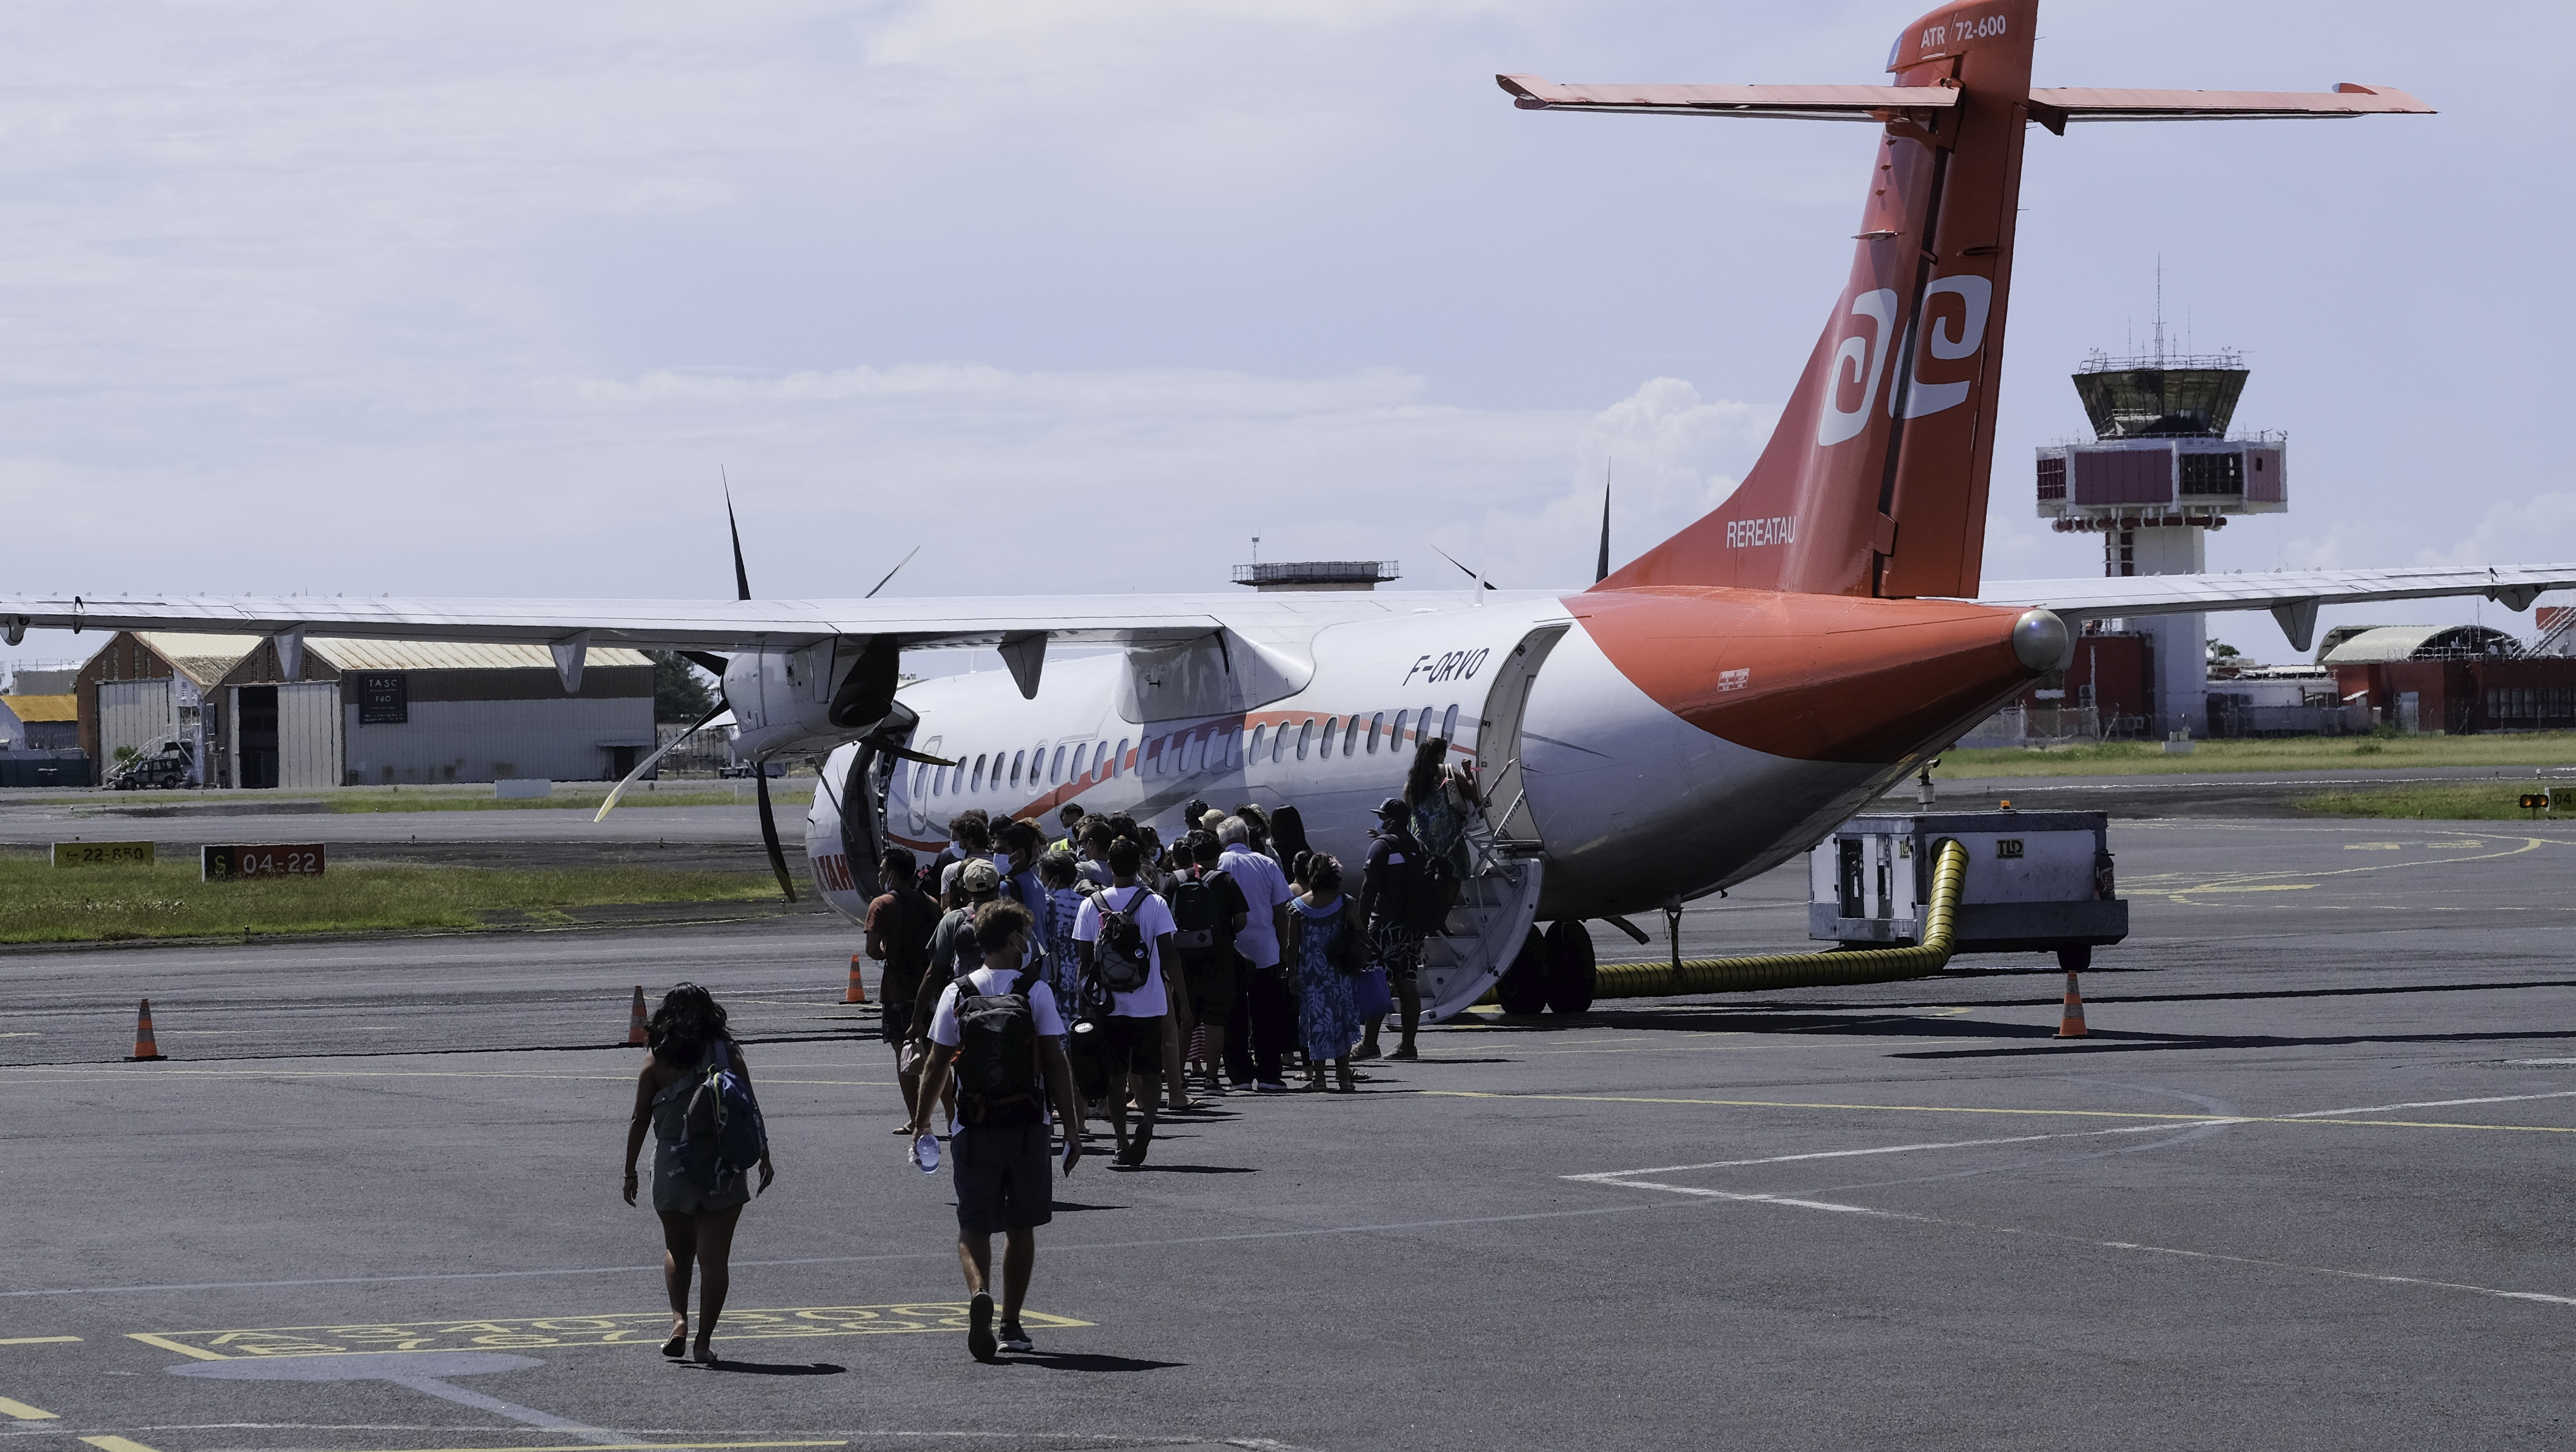 Un des sept ATR 72 d'Air Tahiti est hors service pour plusieurs jours, annonce vendredi la compagnie qui se trouve contrainte de modifier près de la moitié de ses horaires de vols jusqu'à mardi.